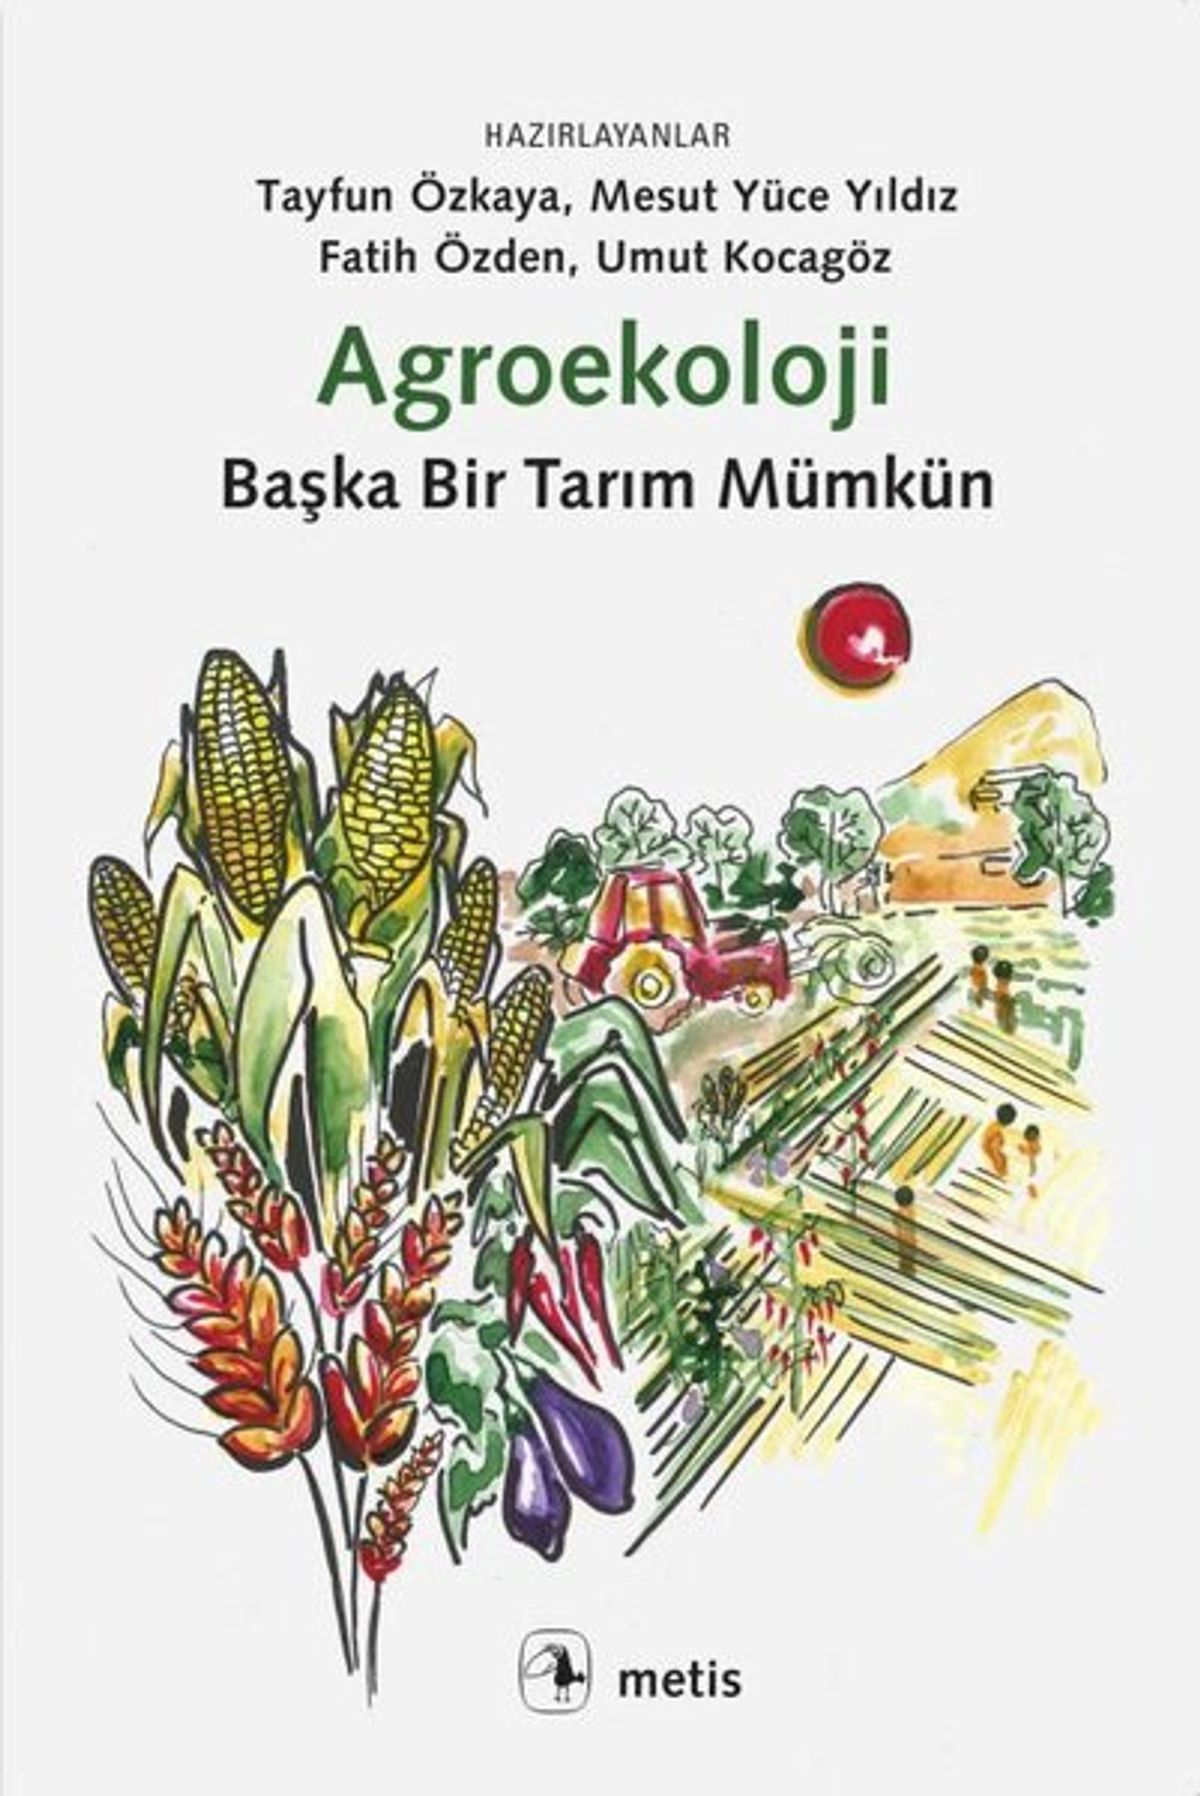 Agroekoloji kitabının kapak görseli